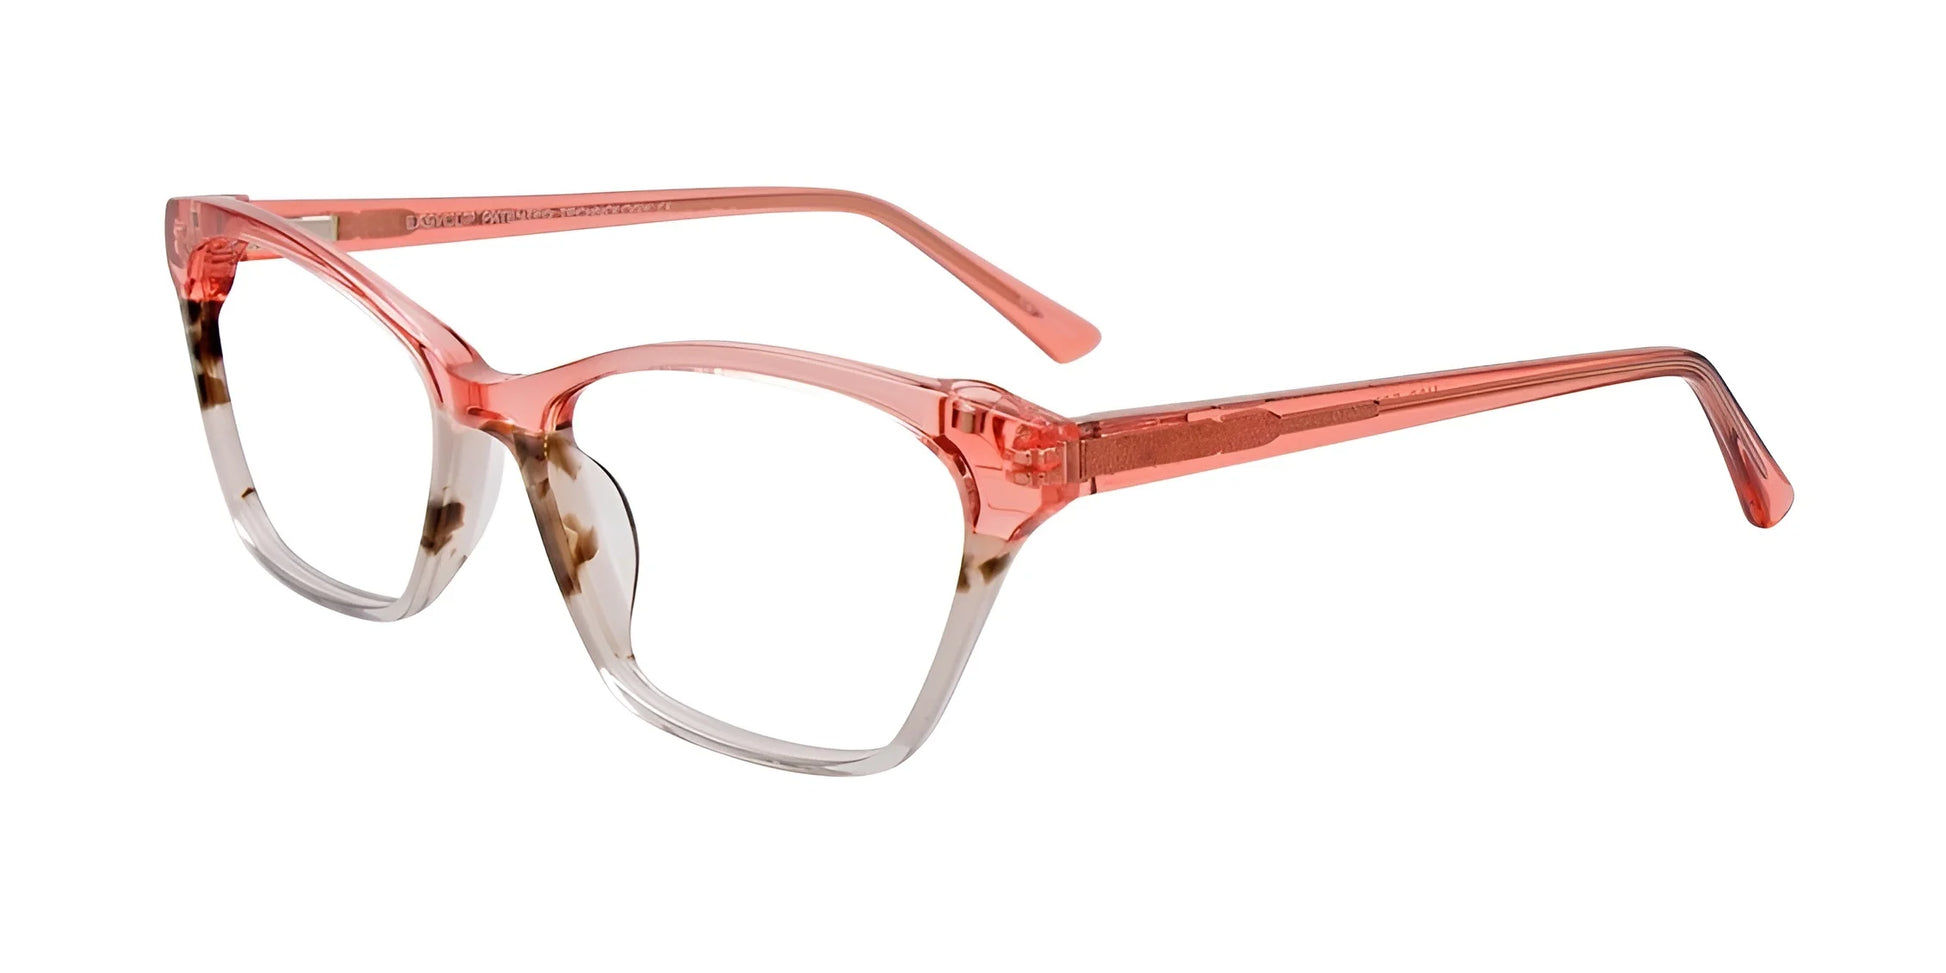 EasyClip EC542 Eyeglasses Crystal Pink & Marbled Dark Brown & White